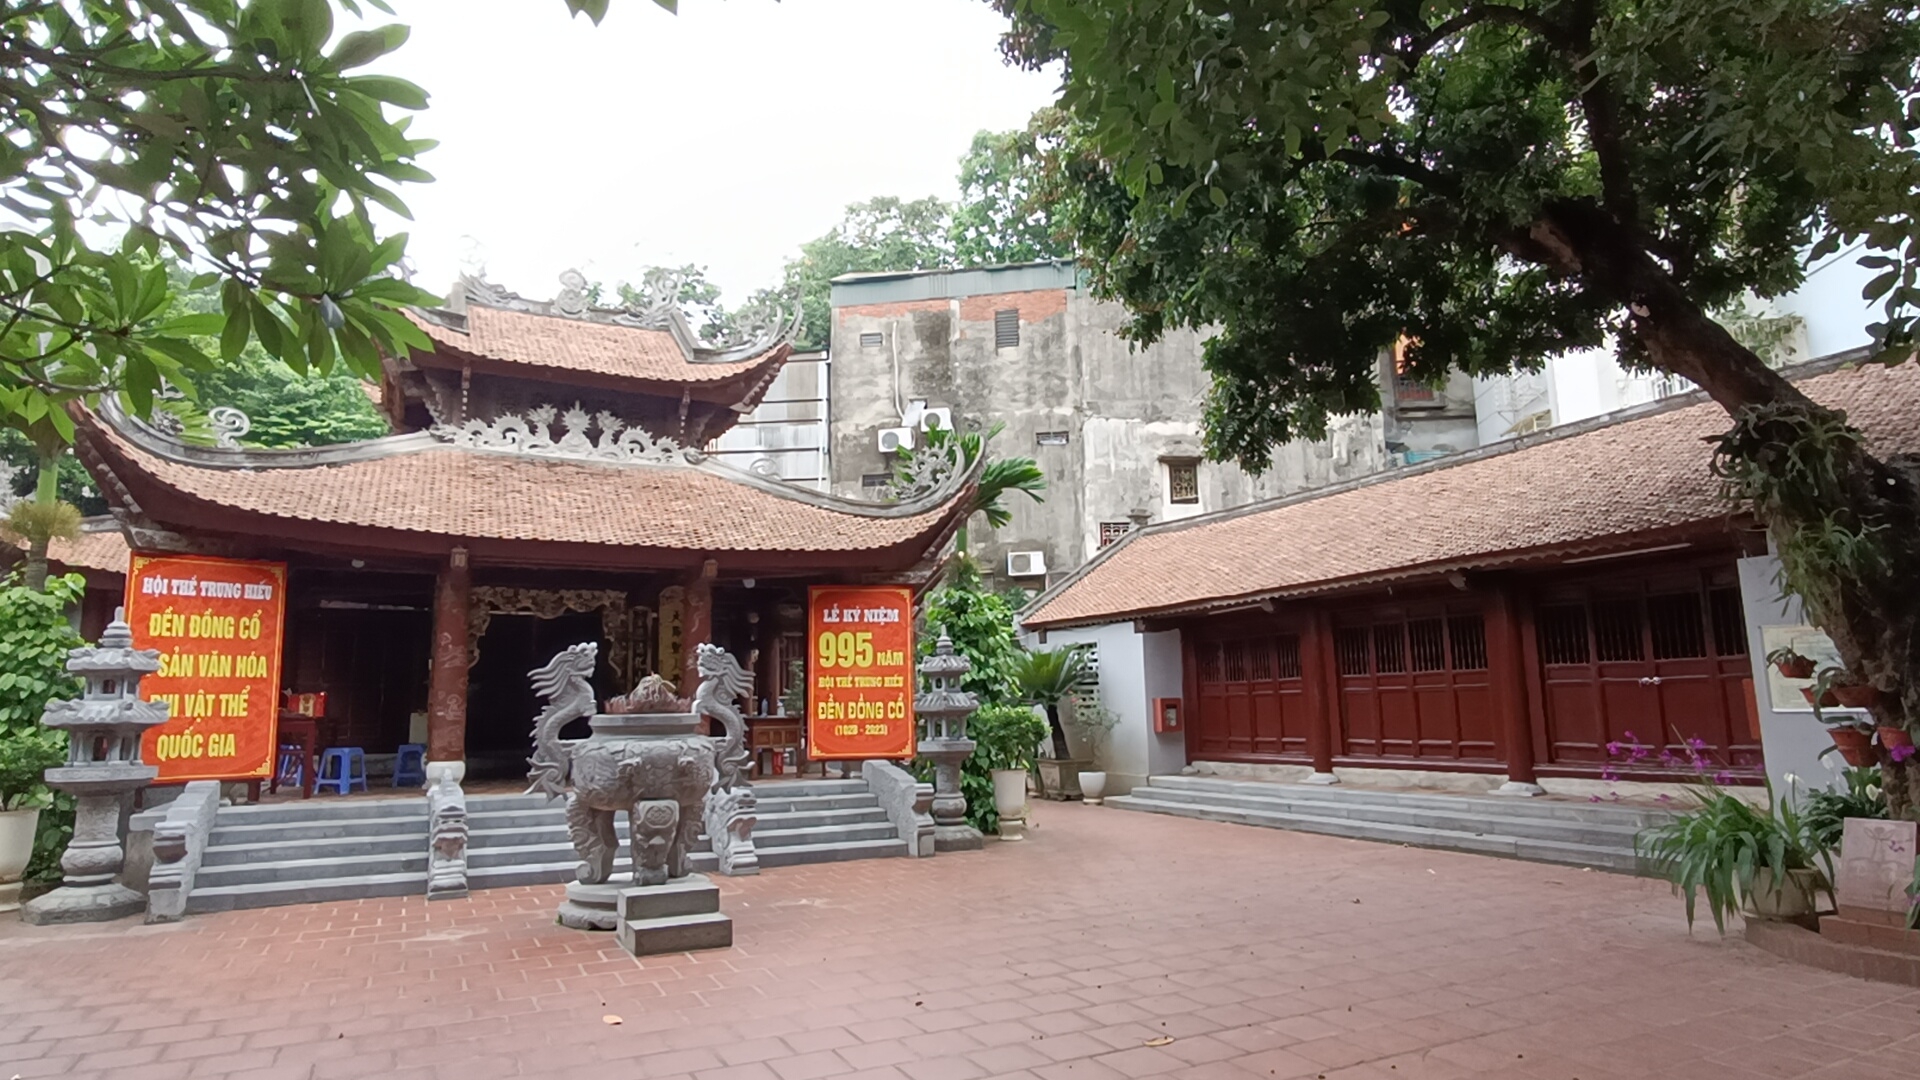 Phát huy giá trị lịch sử, văn hoá đền Đồng Cổ